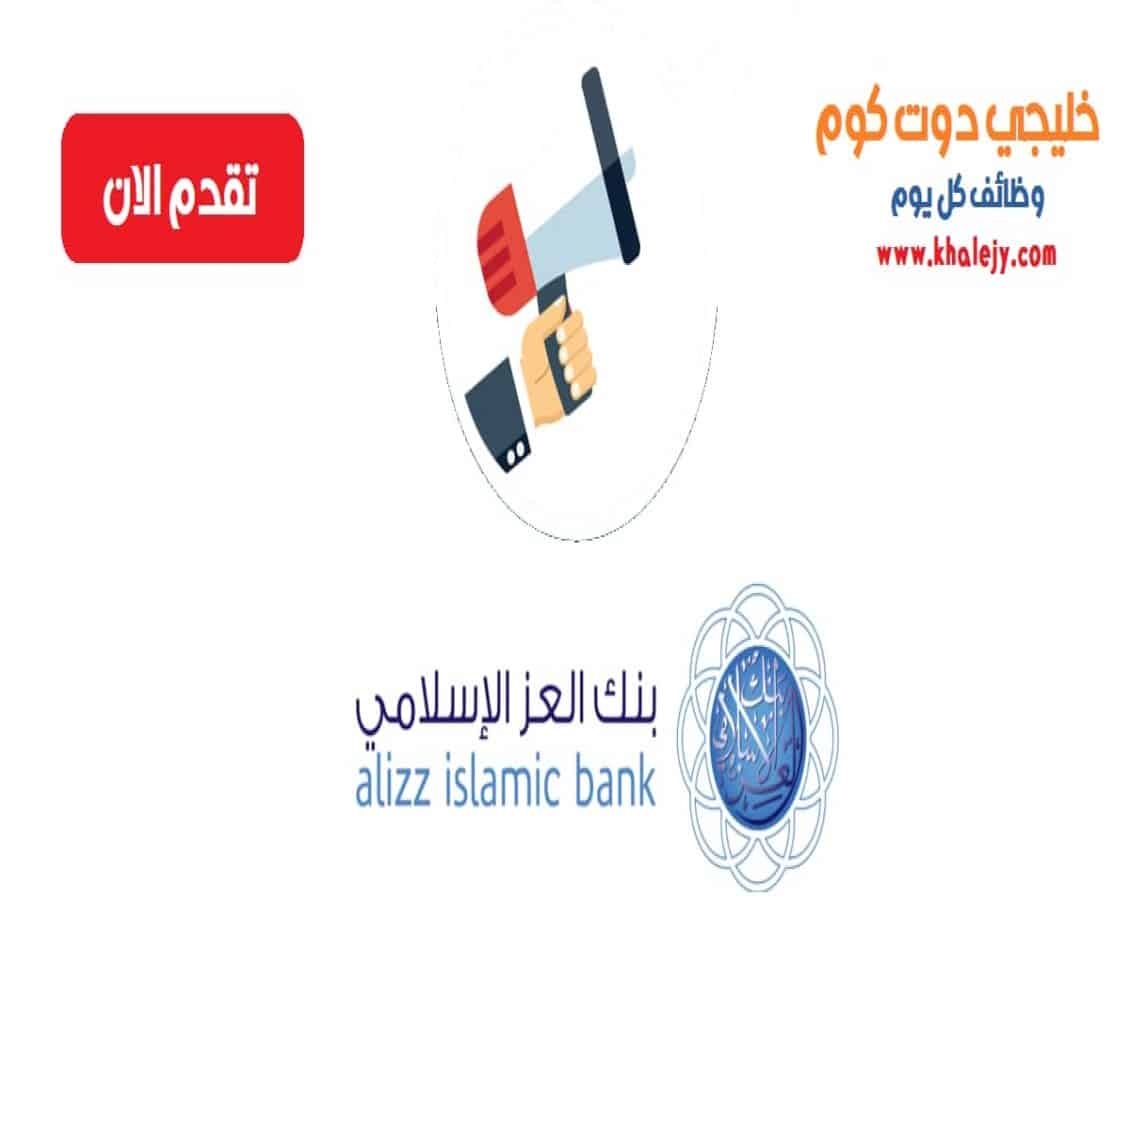 وظائف بنك العز الاسلامي في سلطنة عمان